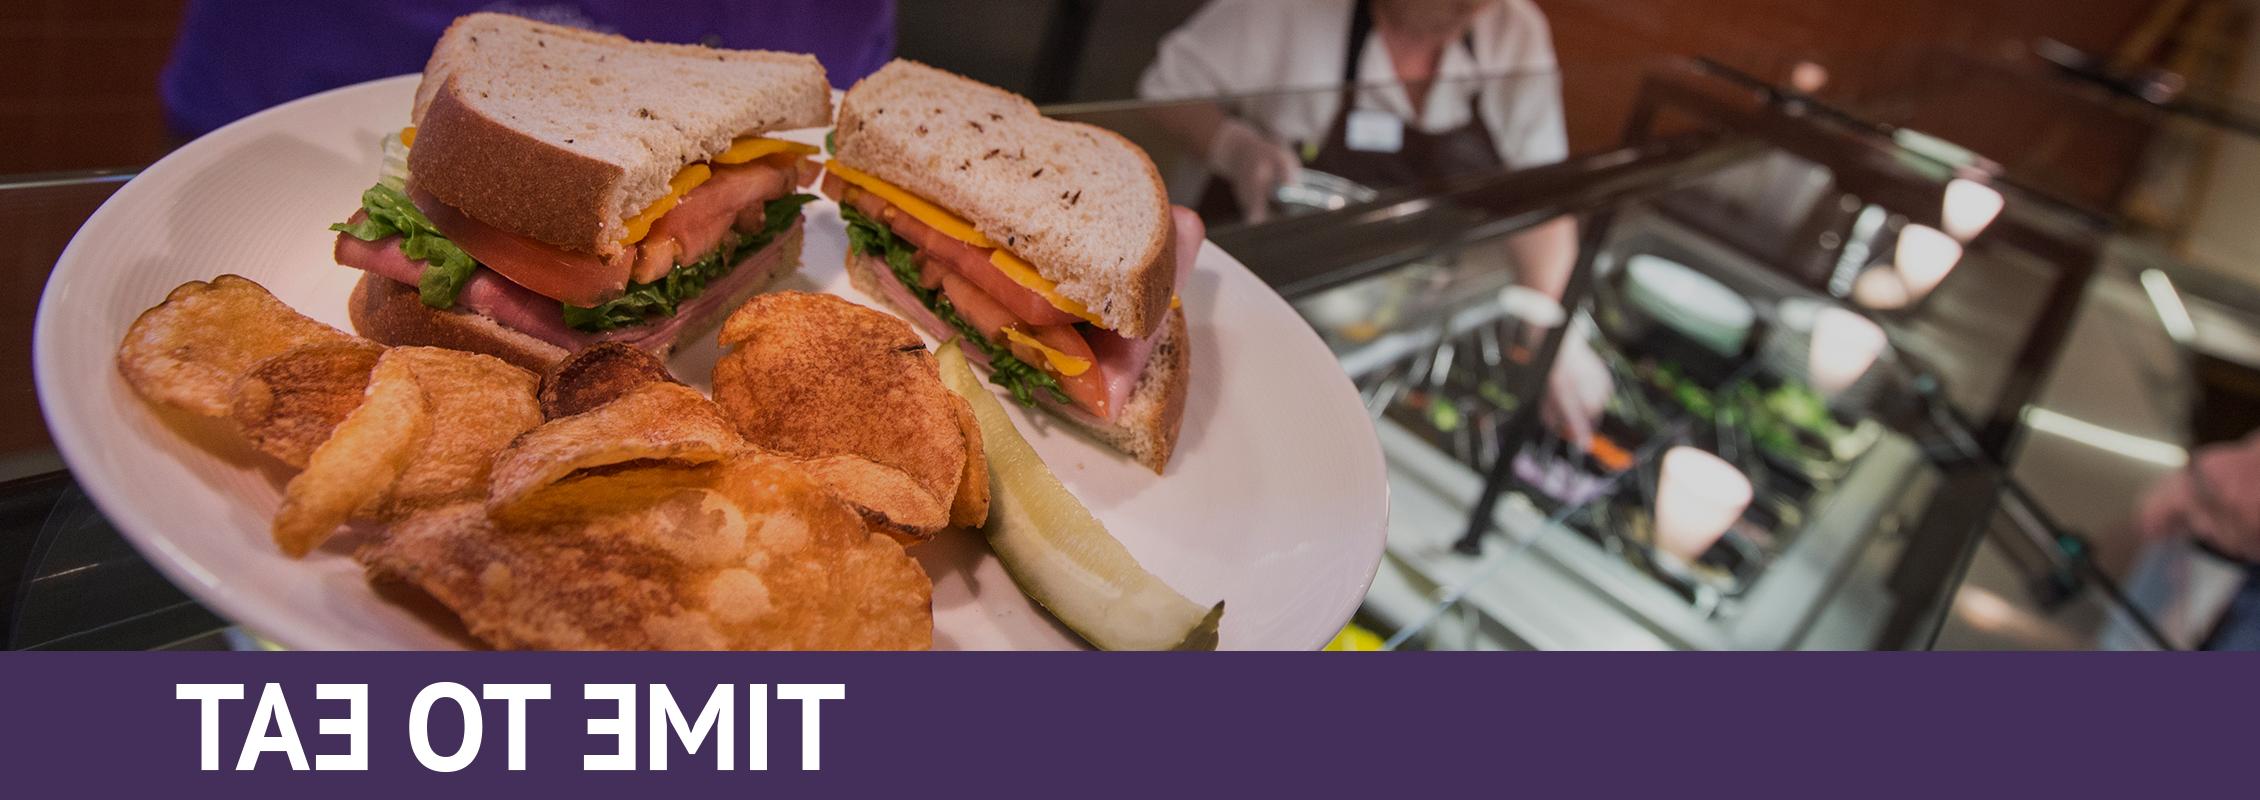 用餐时间:一个沙拉吧和一个装有三明治、薯片和泡菜的盘子 